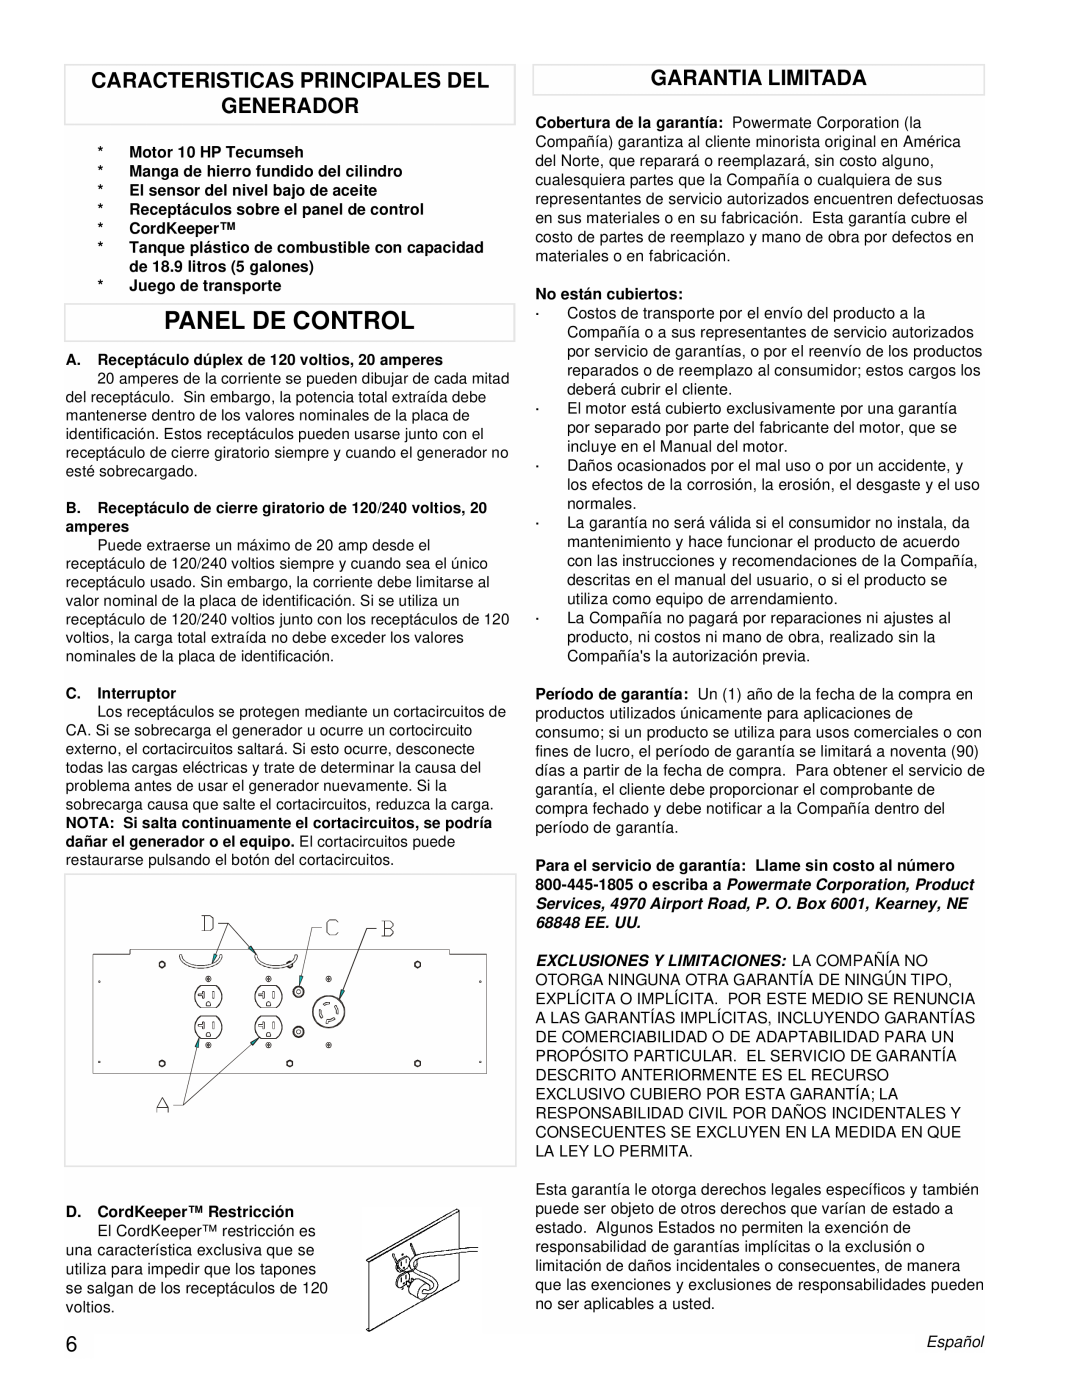 Powermate PM0525312.03 manual Panel De Control, Caracteristicas Principales Del Generador, Garantia Limitada 